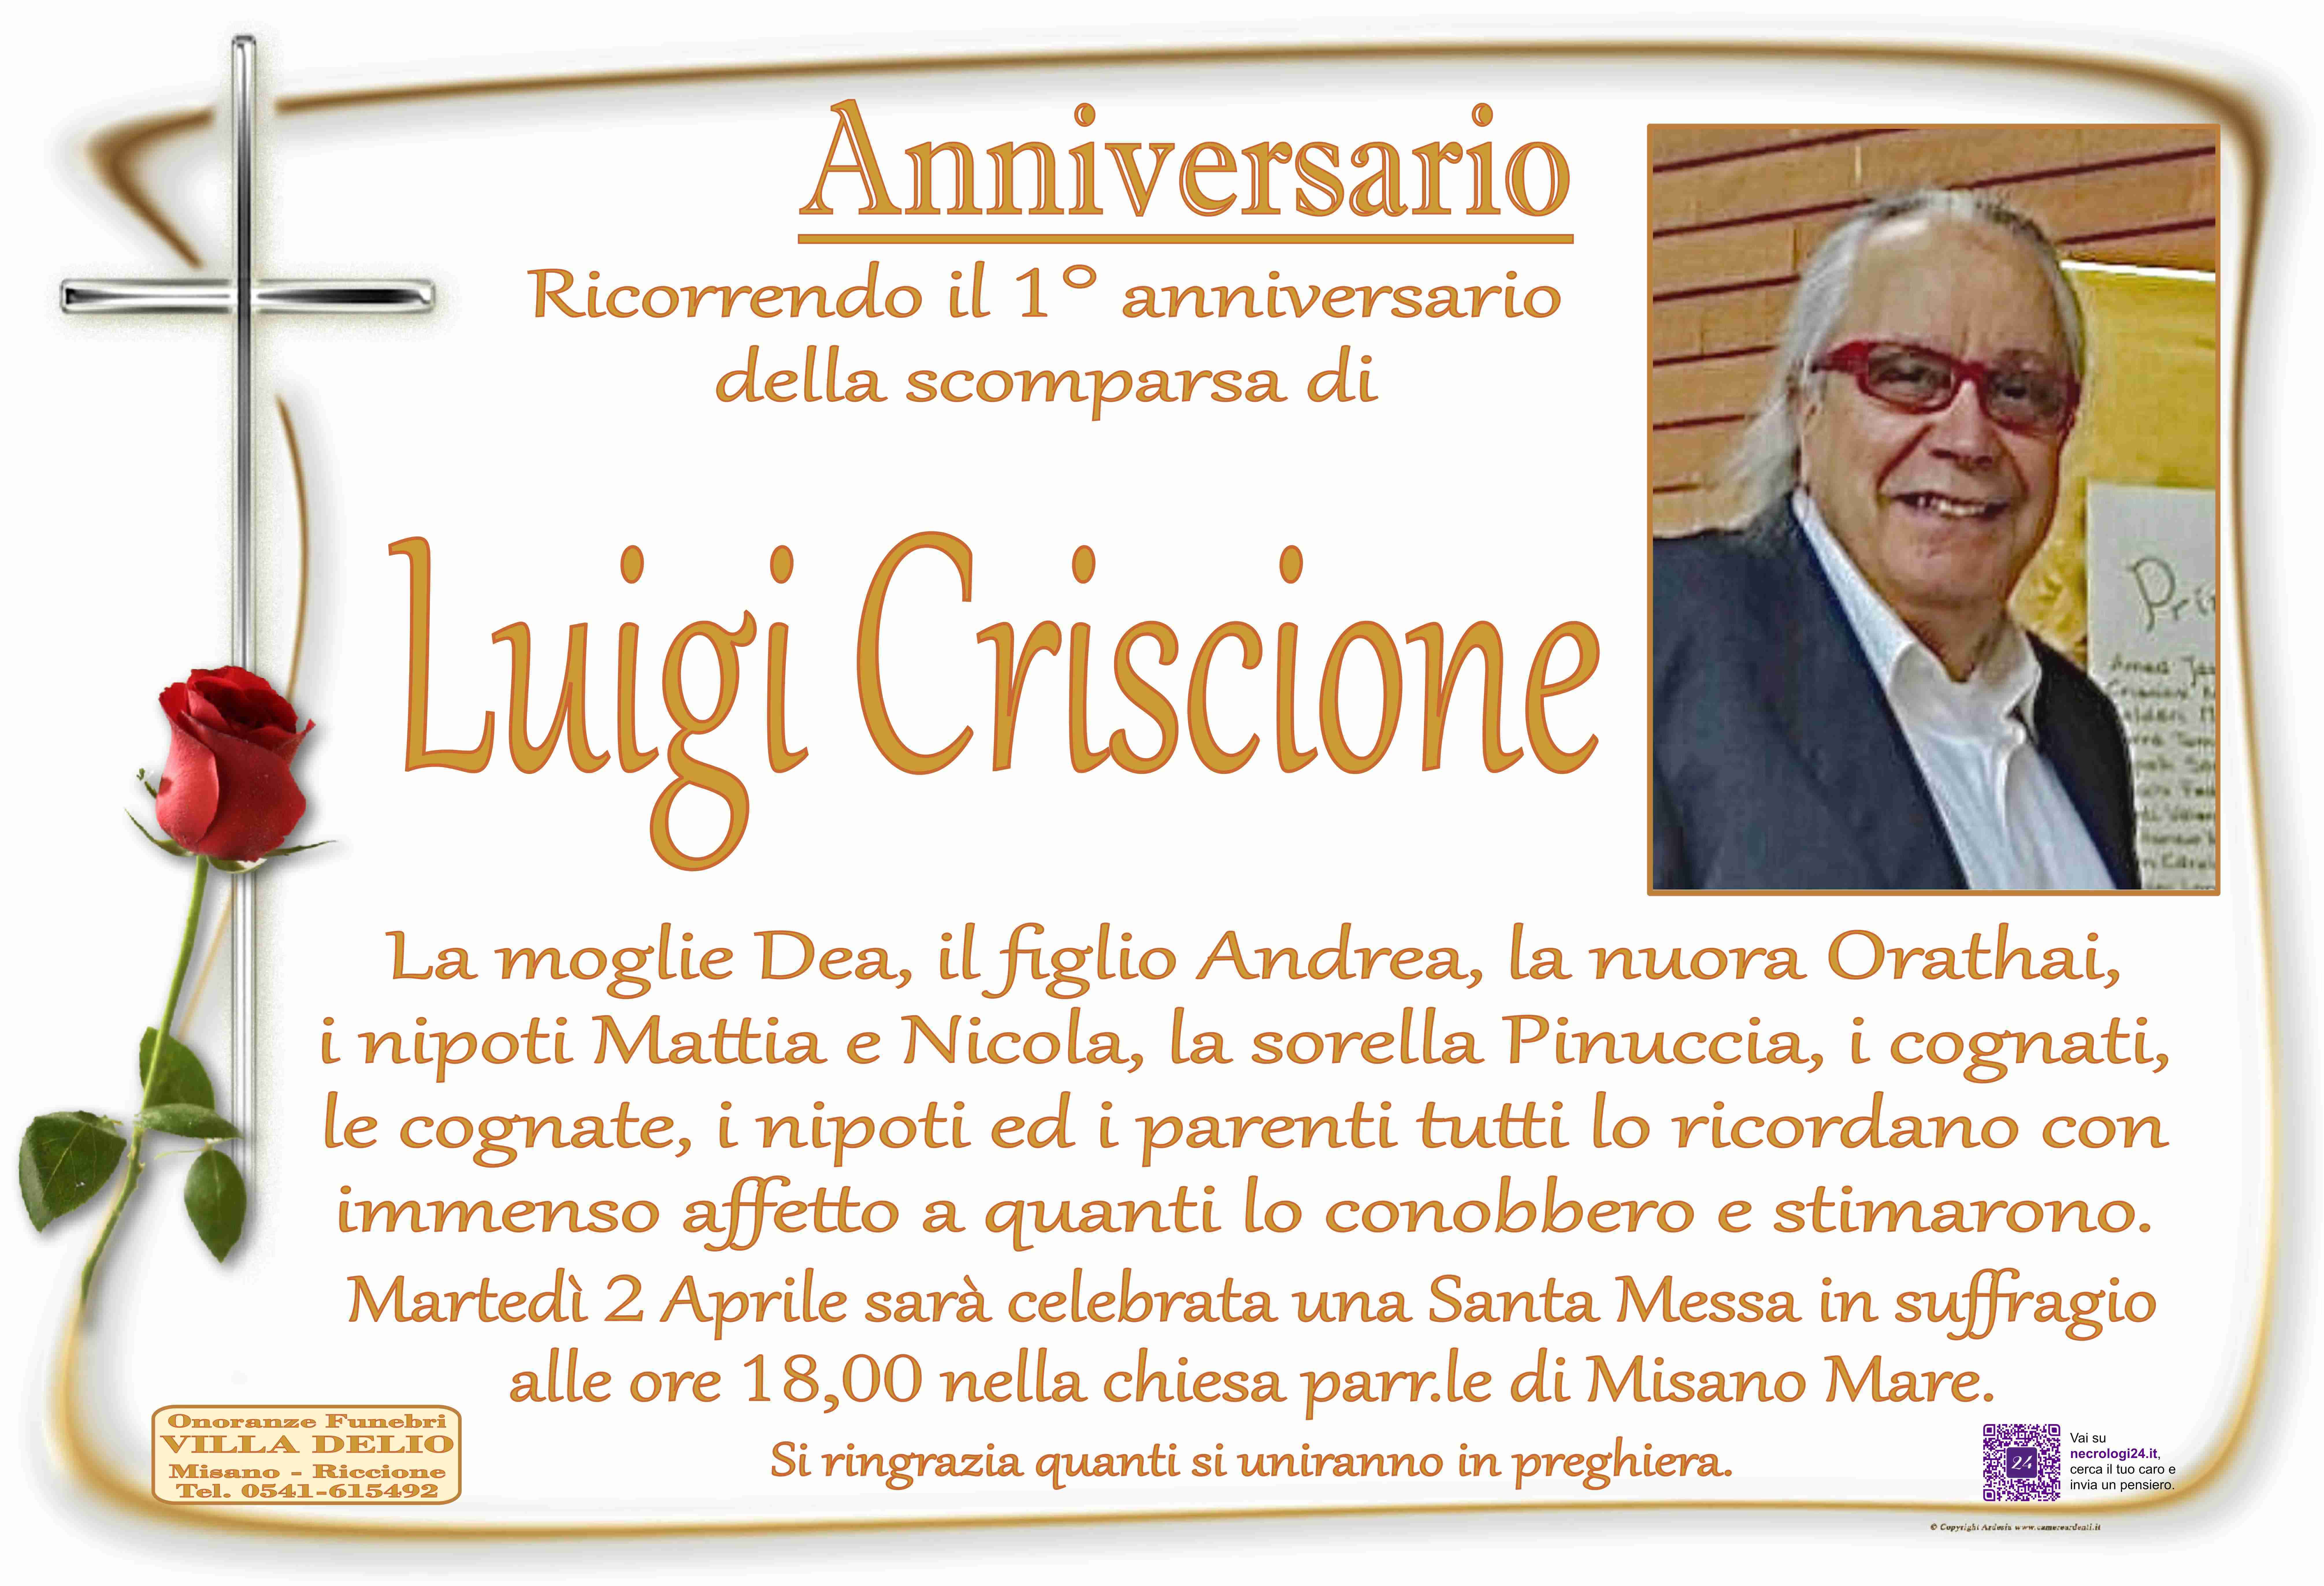 Luigi Criscione